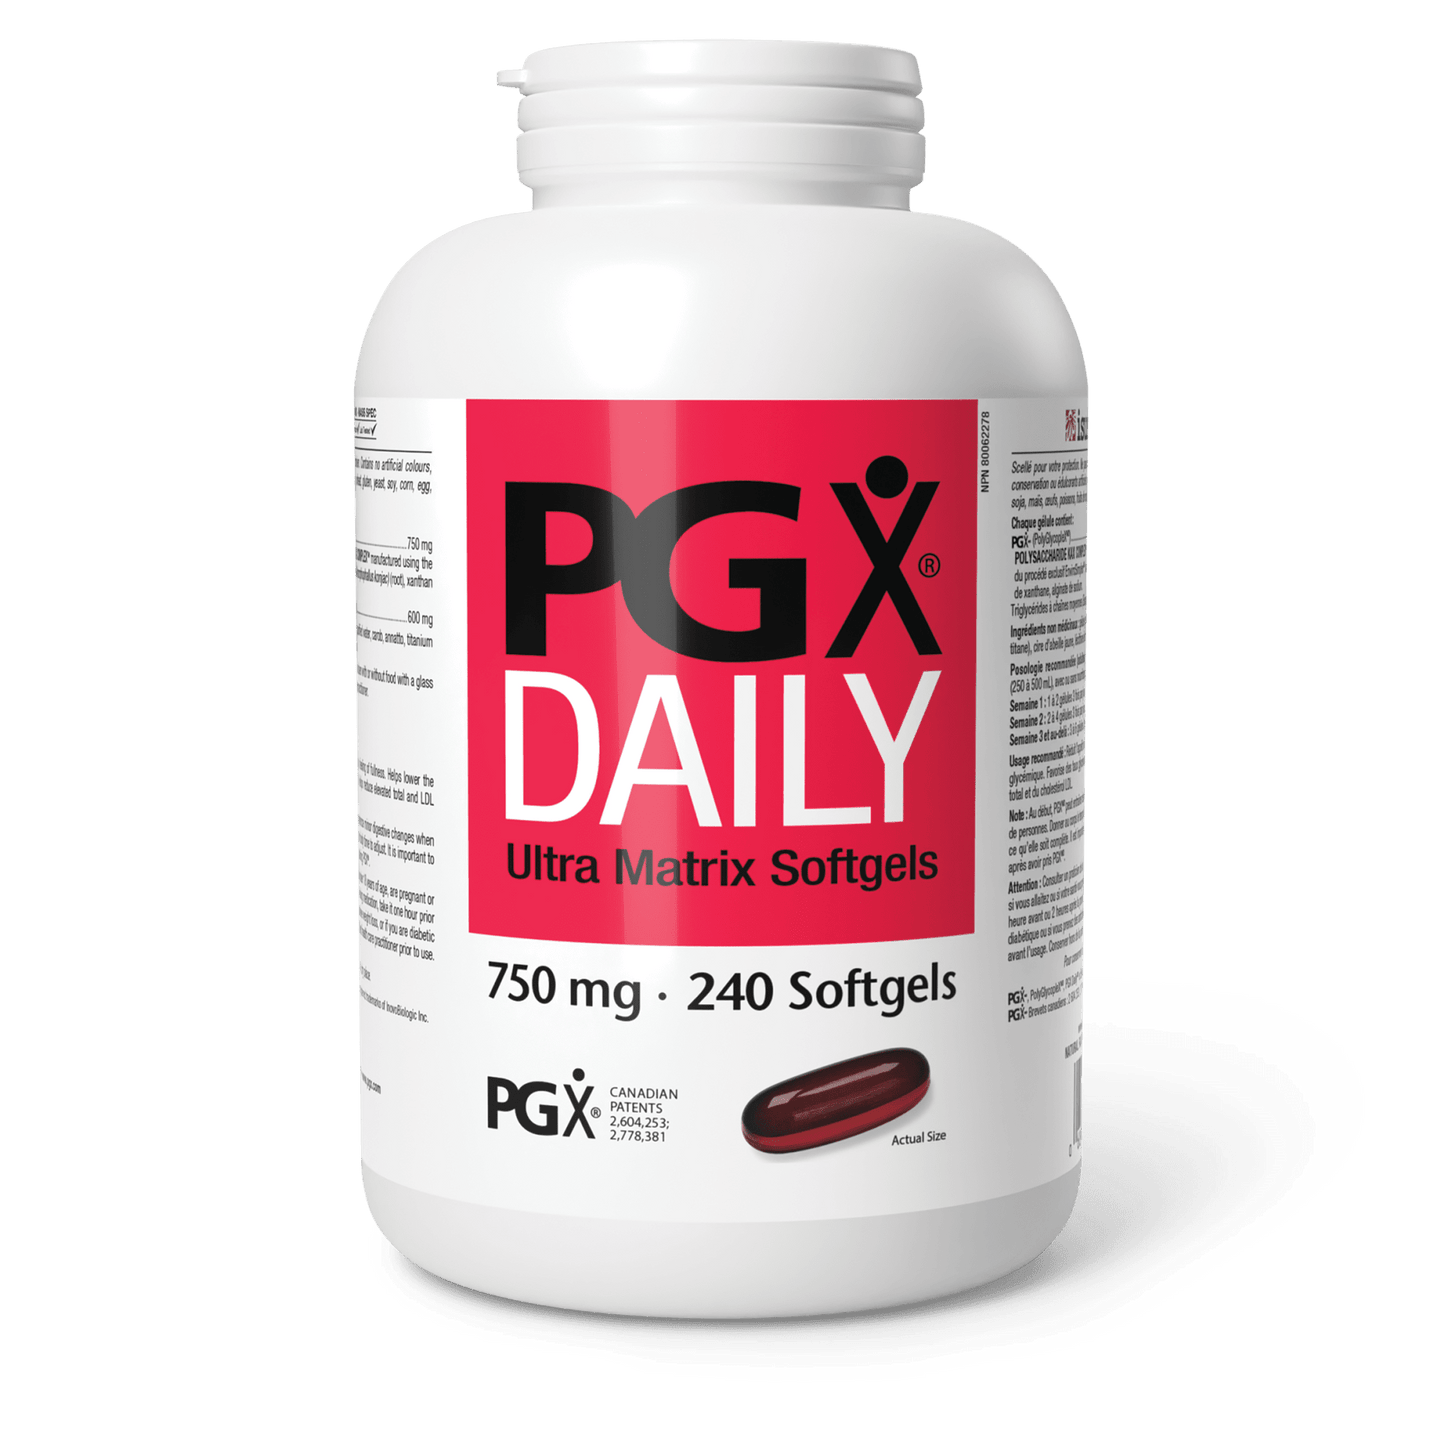 PGX Daily Ultra Matrix 750 mg, Natural Factors|v|image|3571